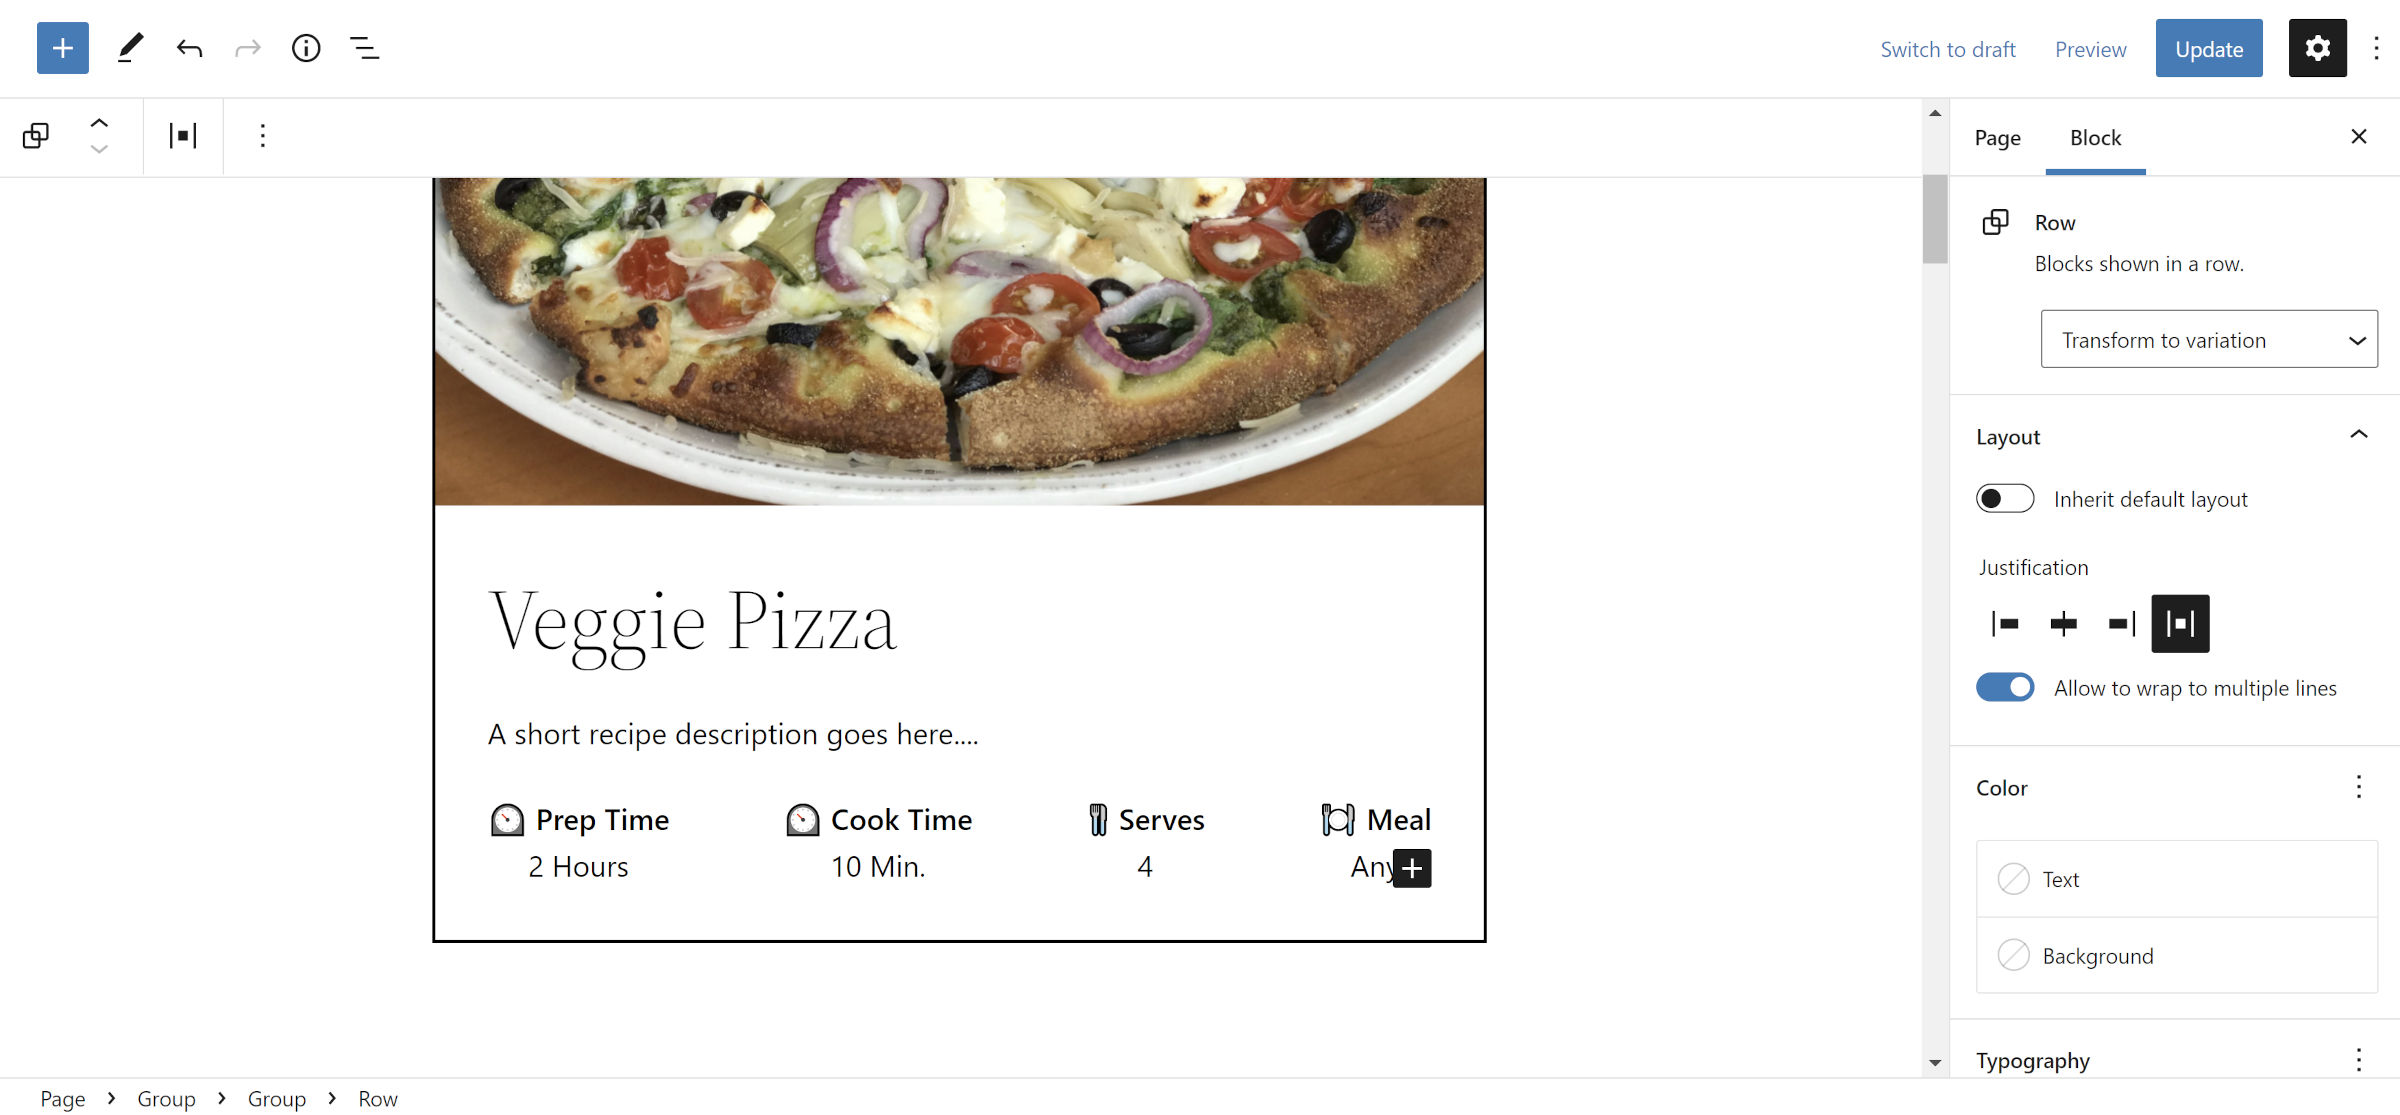 Une fiche recette dans l'éditeur WordPress.  Il contient une image de pizza, suivie d'un titre, d'une description et de métadonnées.